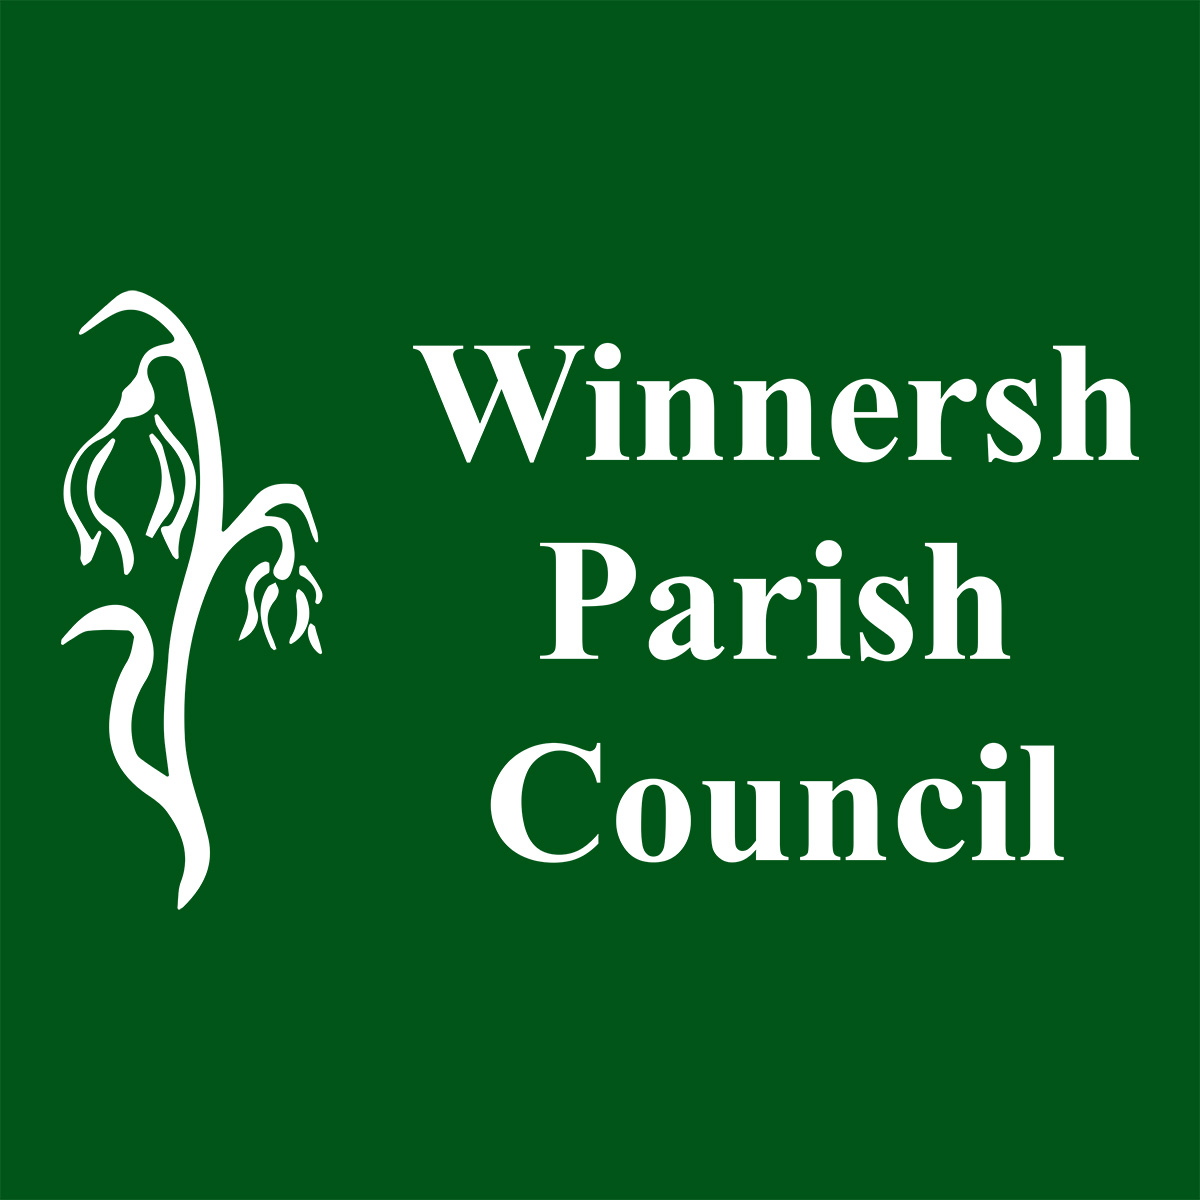 Winnersh parish council logo